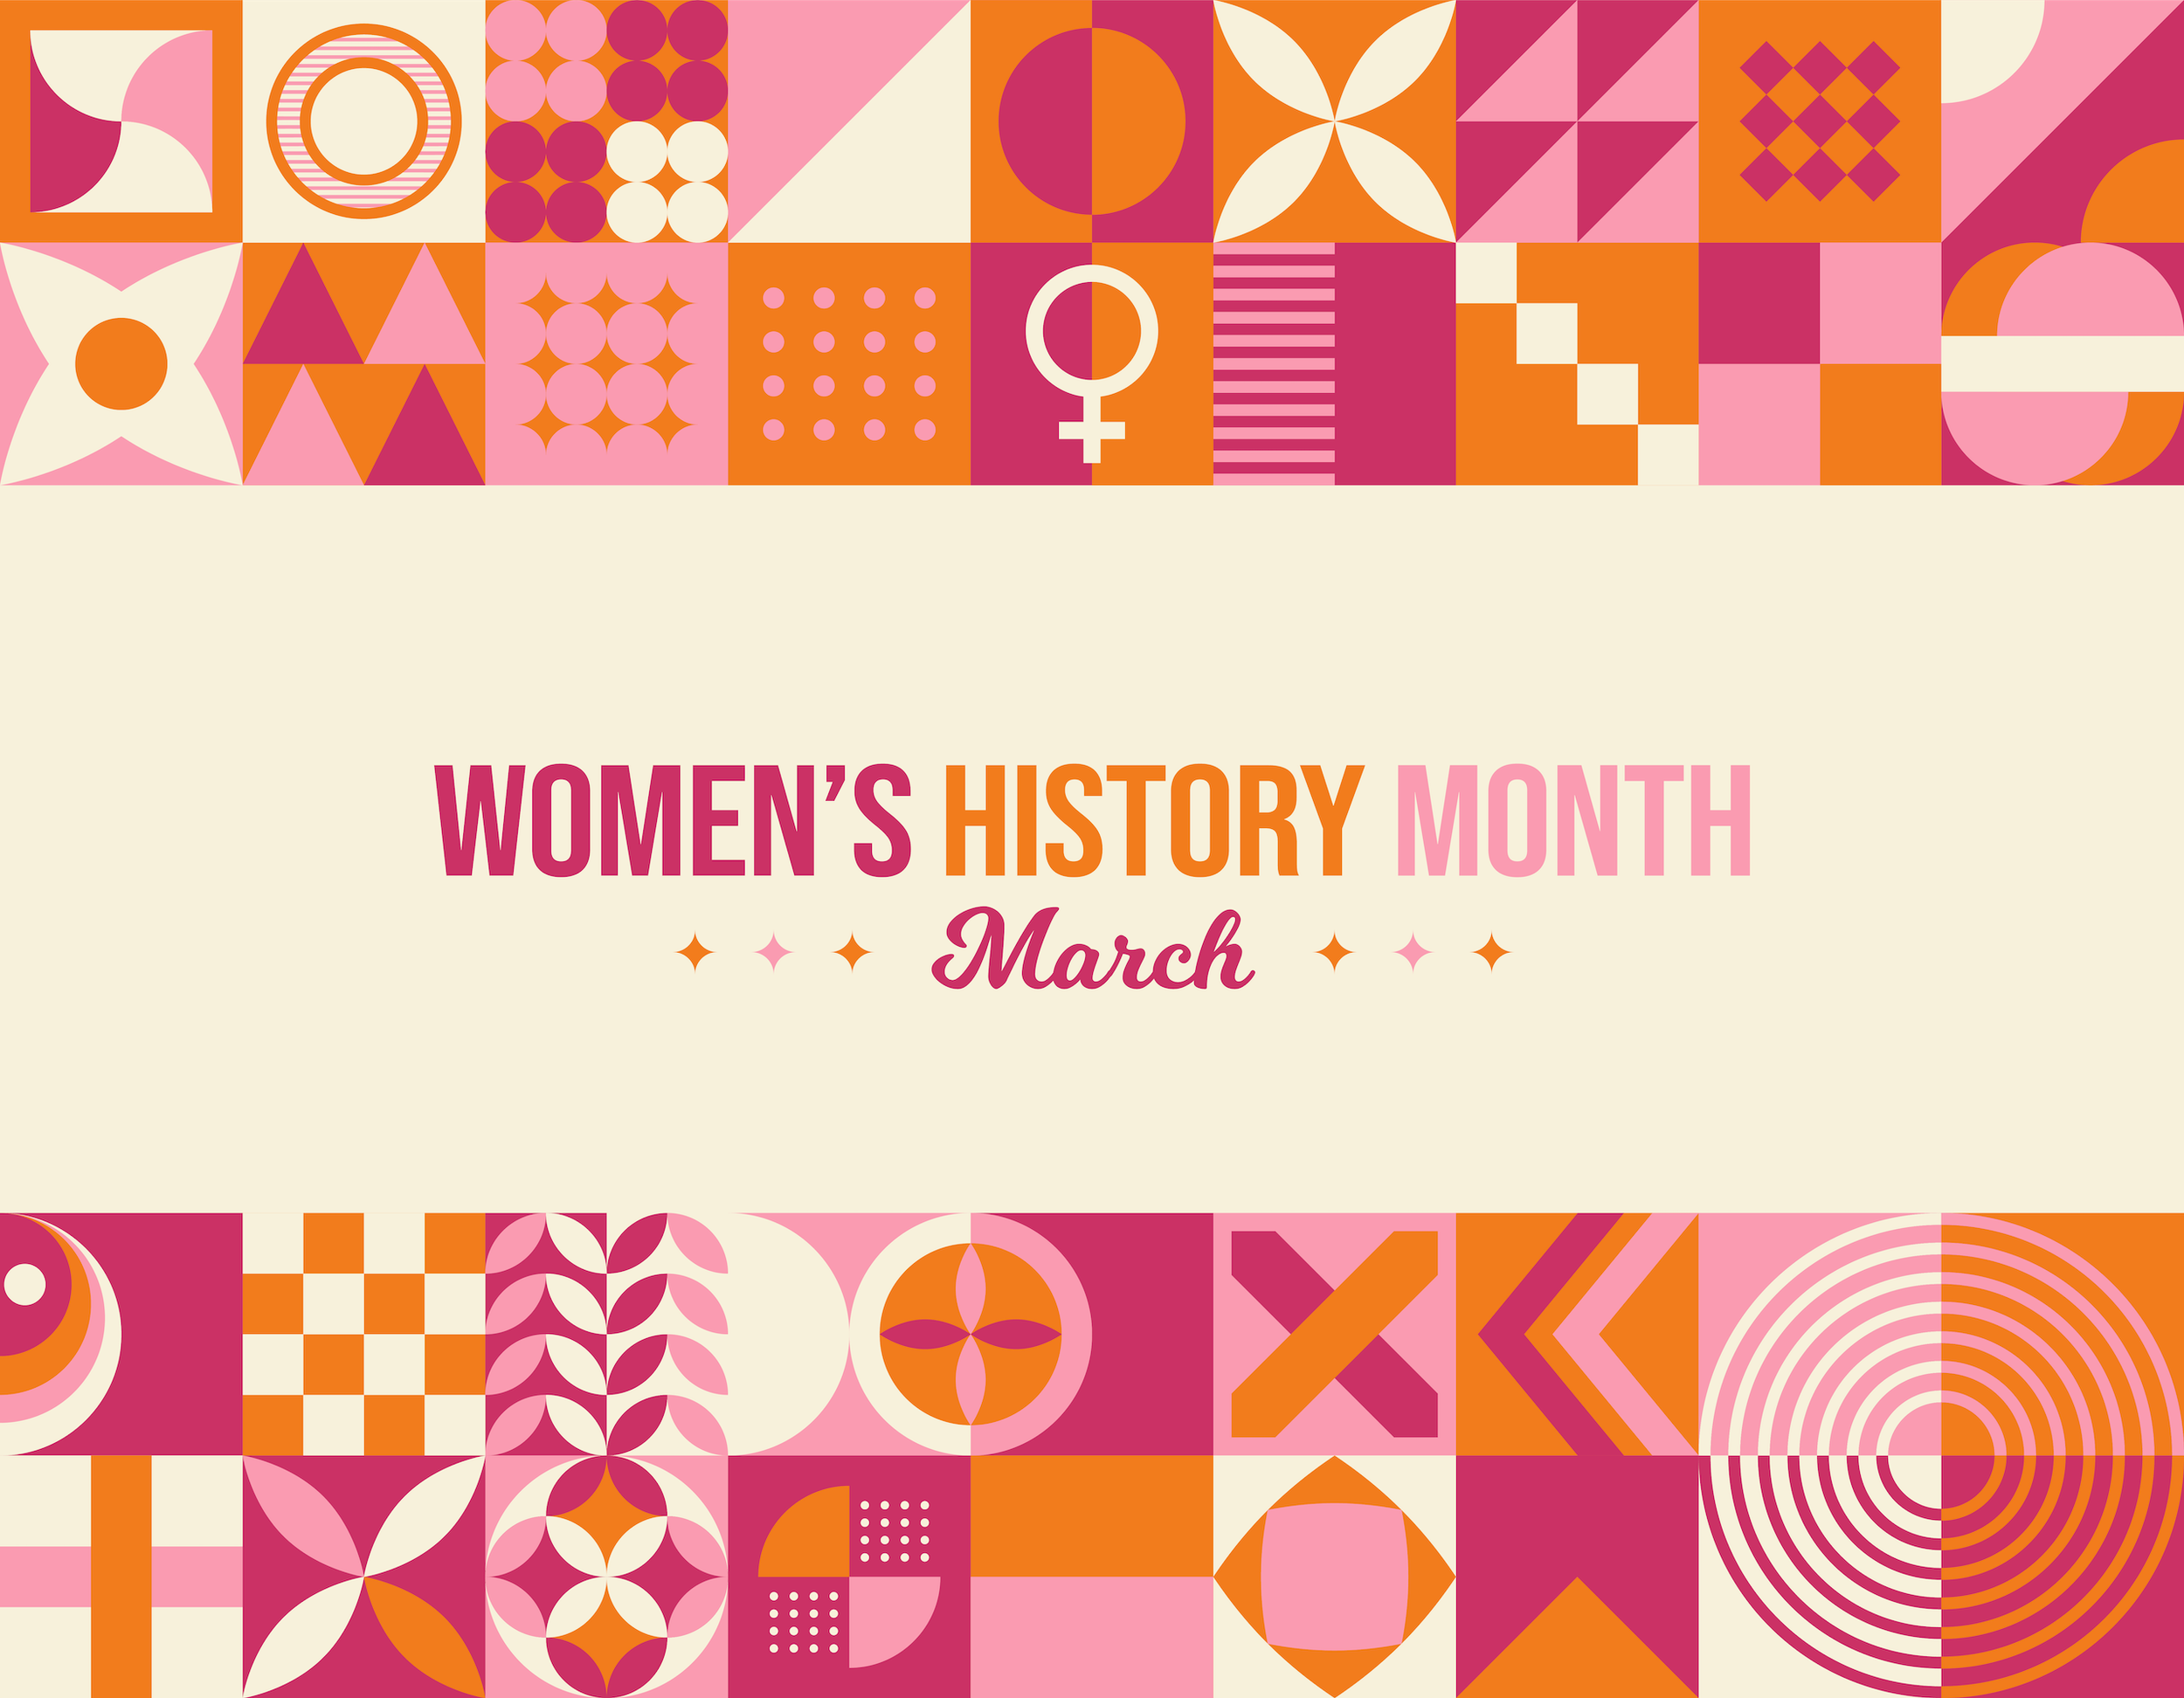 세계 여성의 날과 여성 역사의 달을 기념하는 8가지 방법